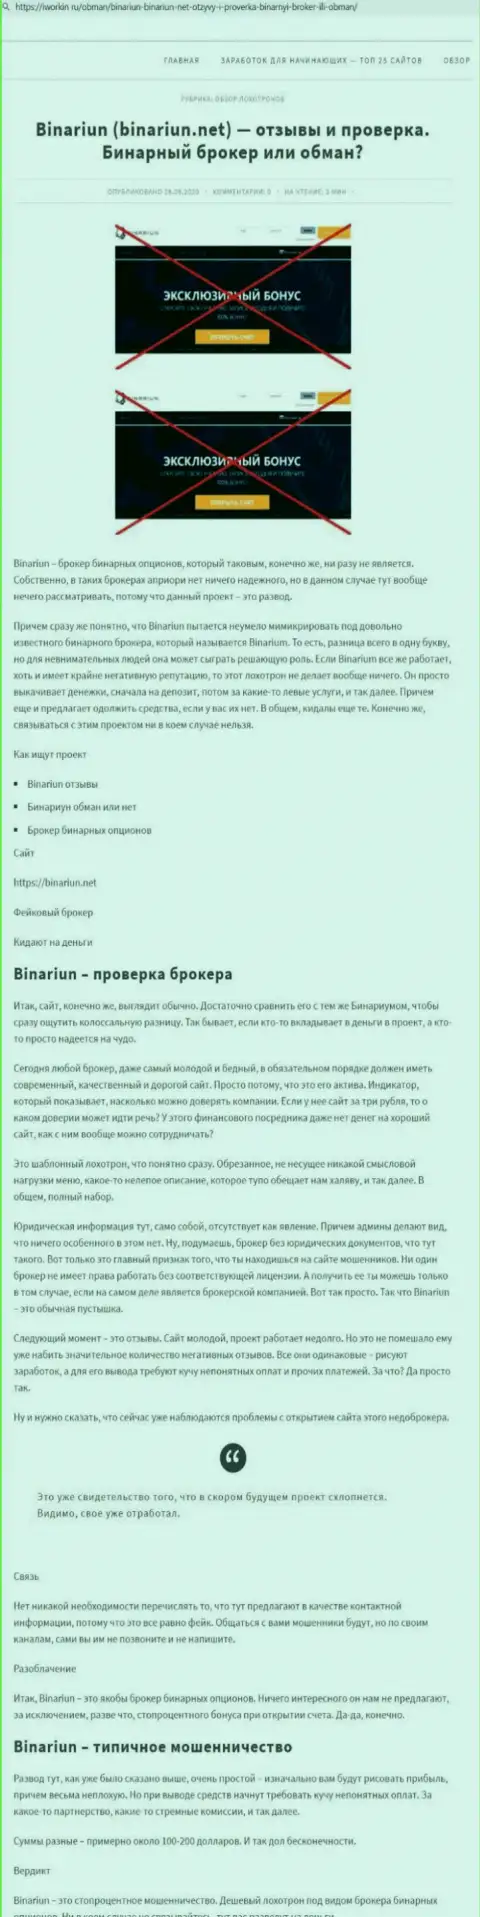 Binariun - это АФЕРИСТЫ !!! Принципы работы ЛОХОТРОНА (обзор)